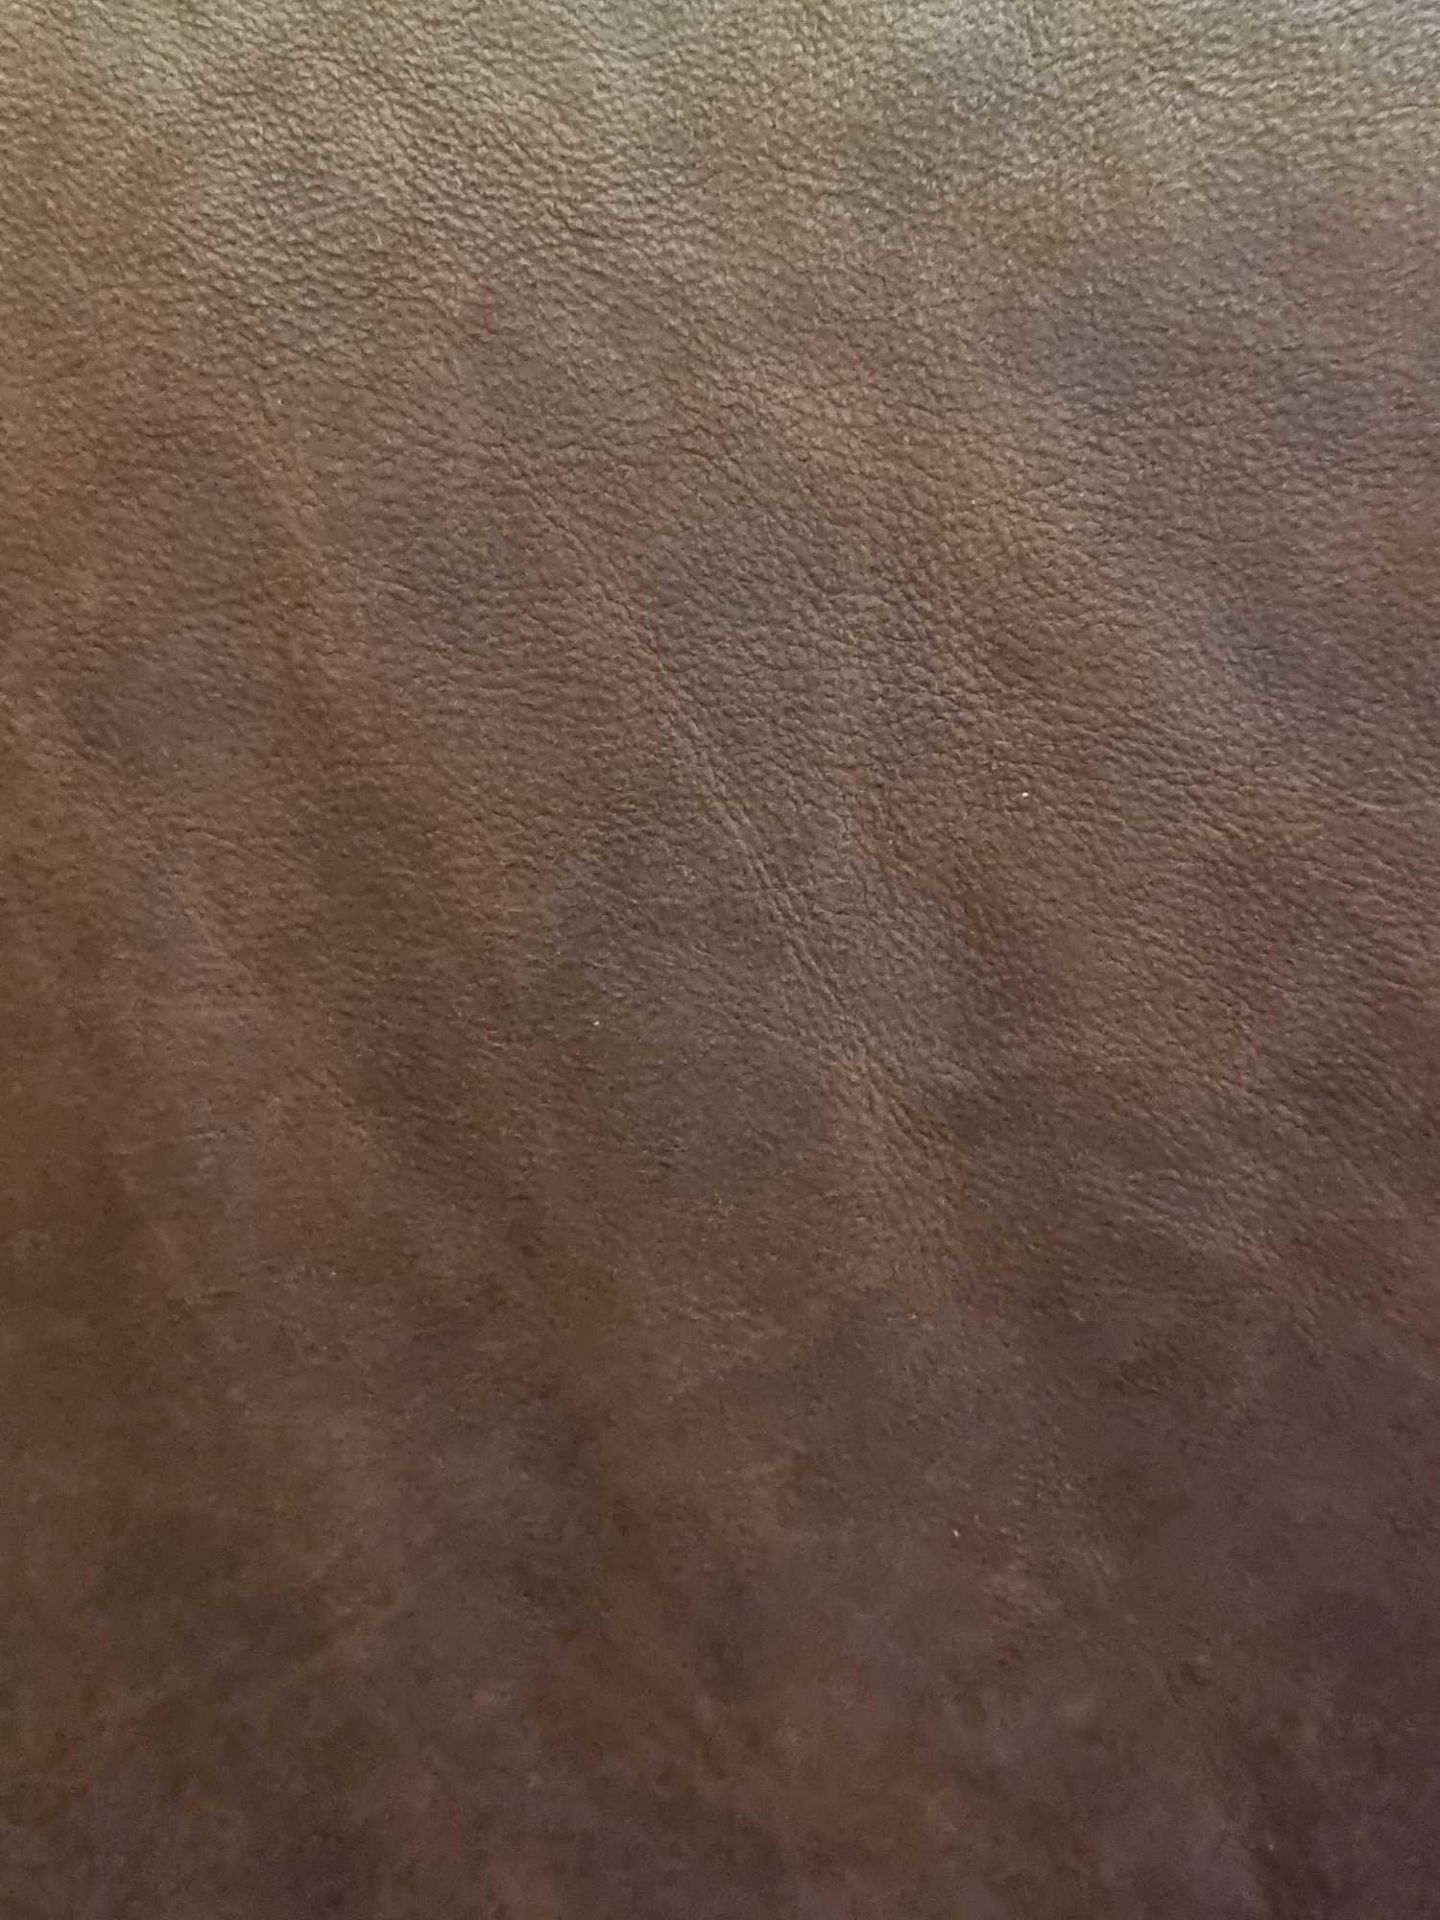 Wallis Holster Brown Leather Hide approximately 5 52M2 2 4 x 2 3cm ( Hide No,238) - Bild 2 aus 3